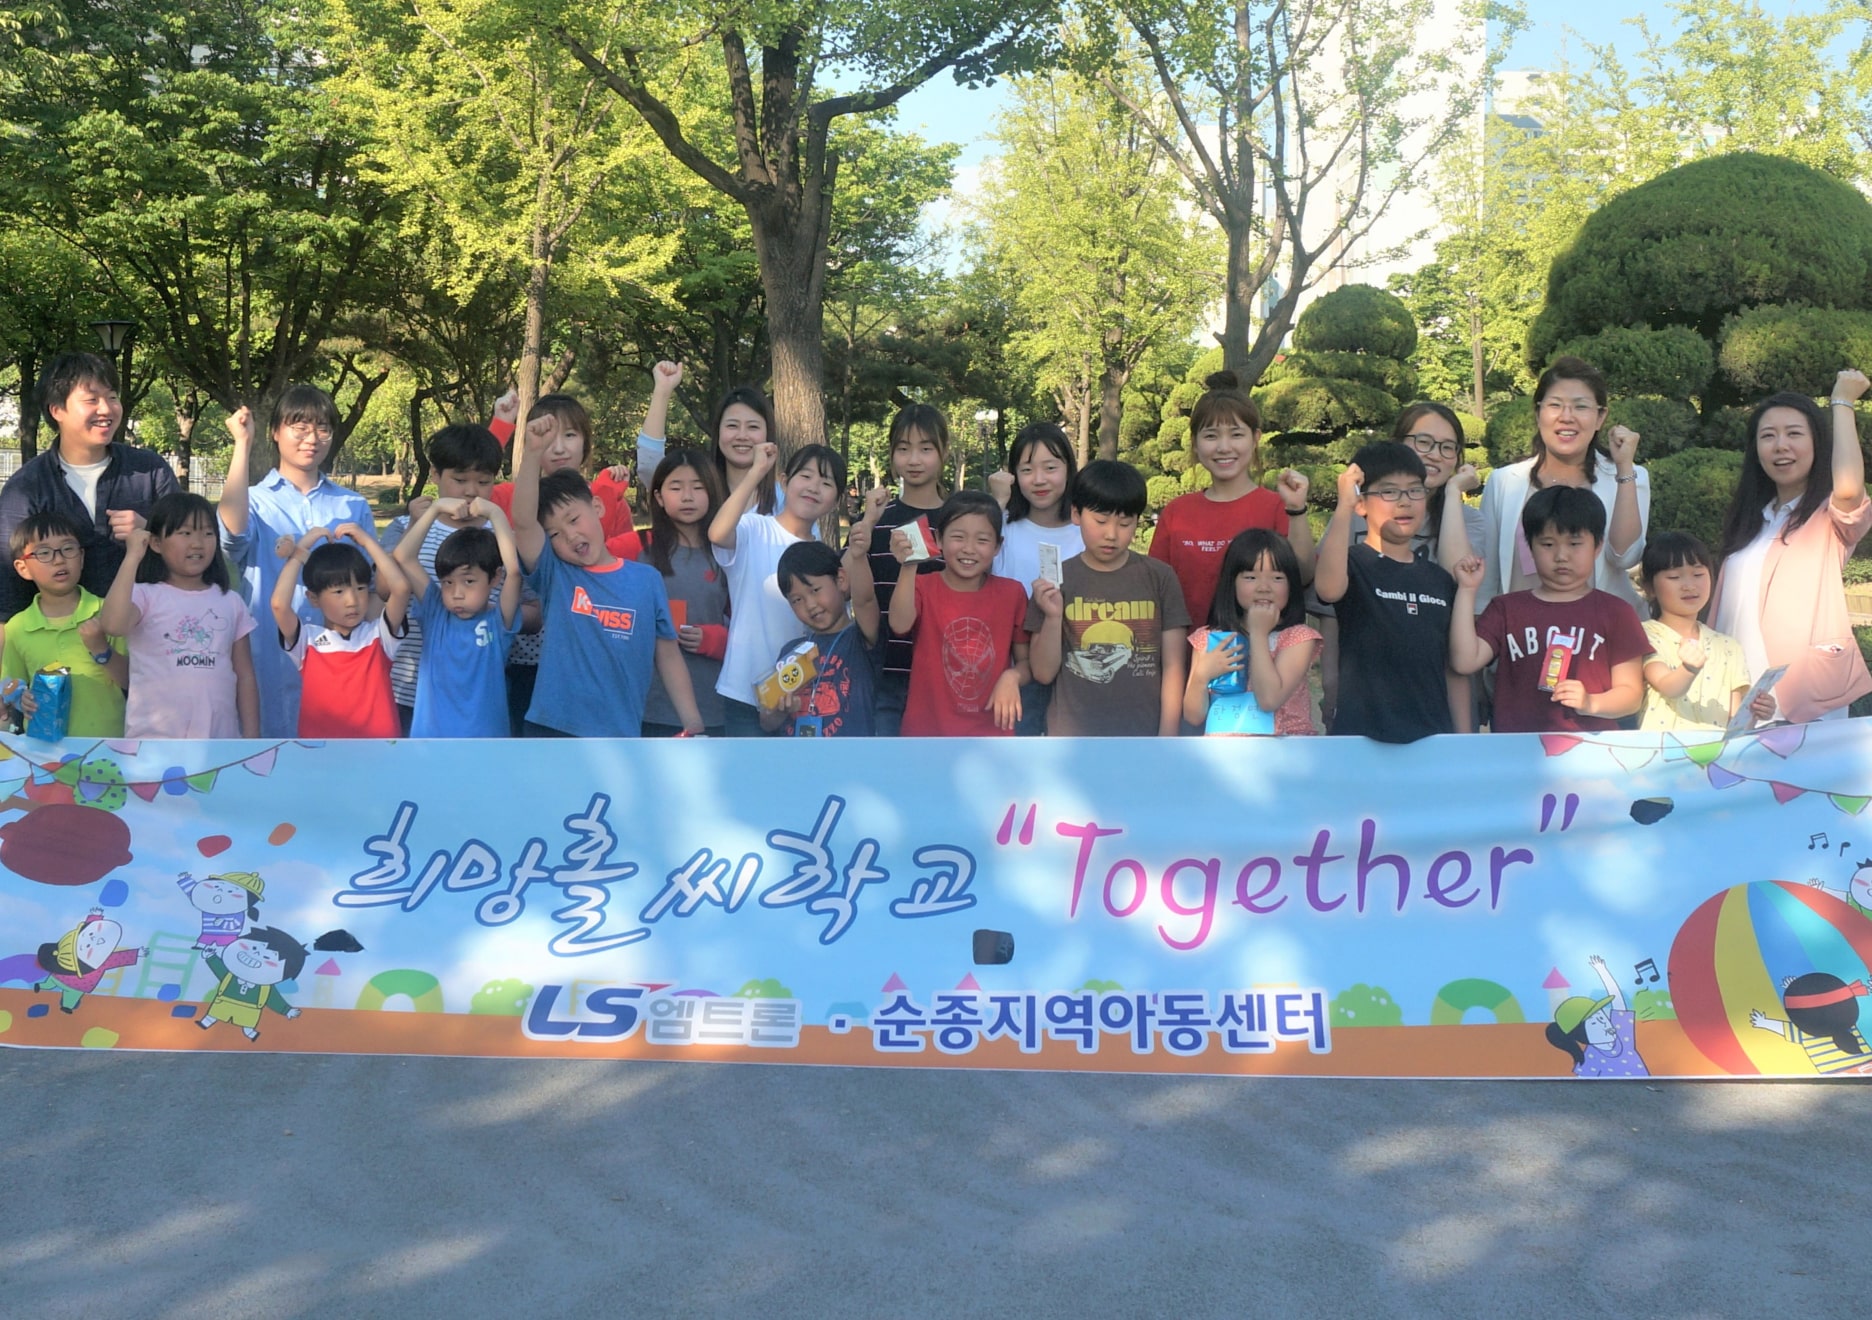 희망홀씨학교 together : LS엠트론,순종지역아동센터